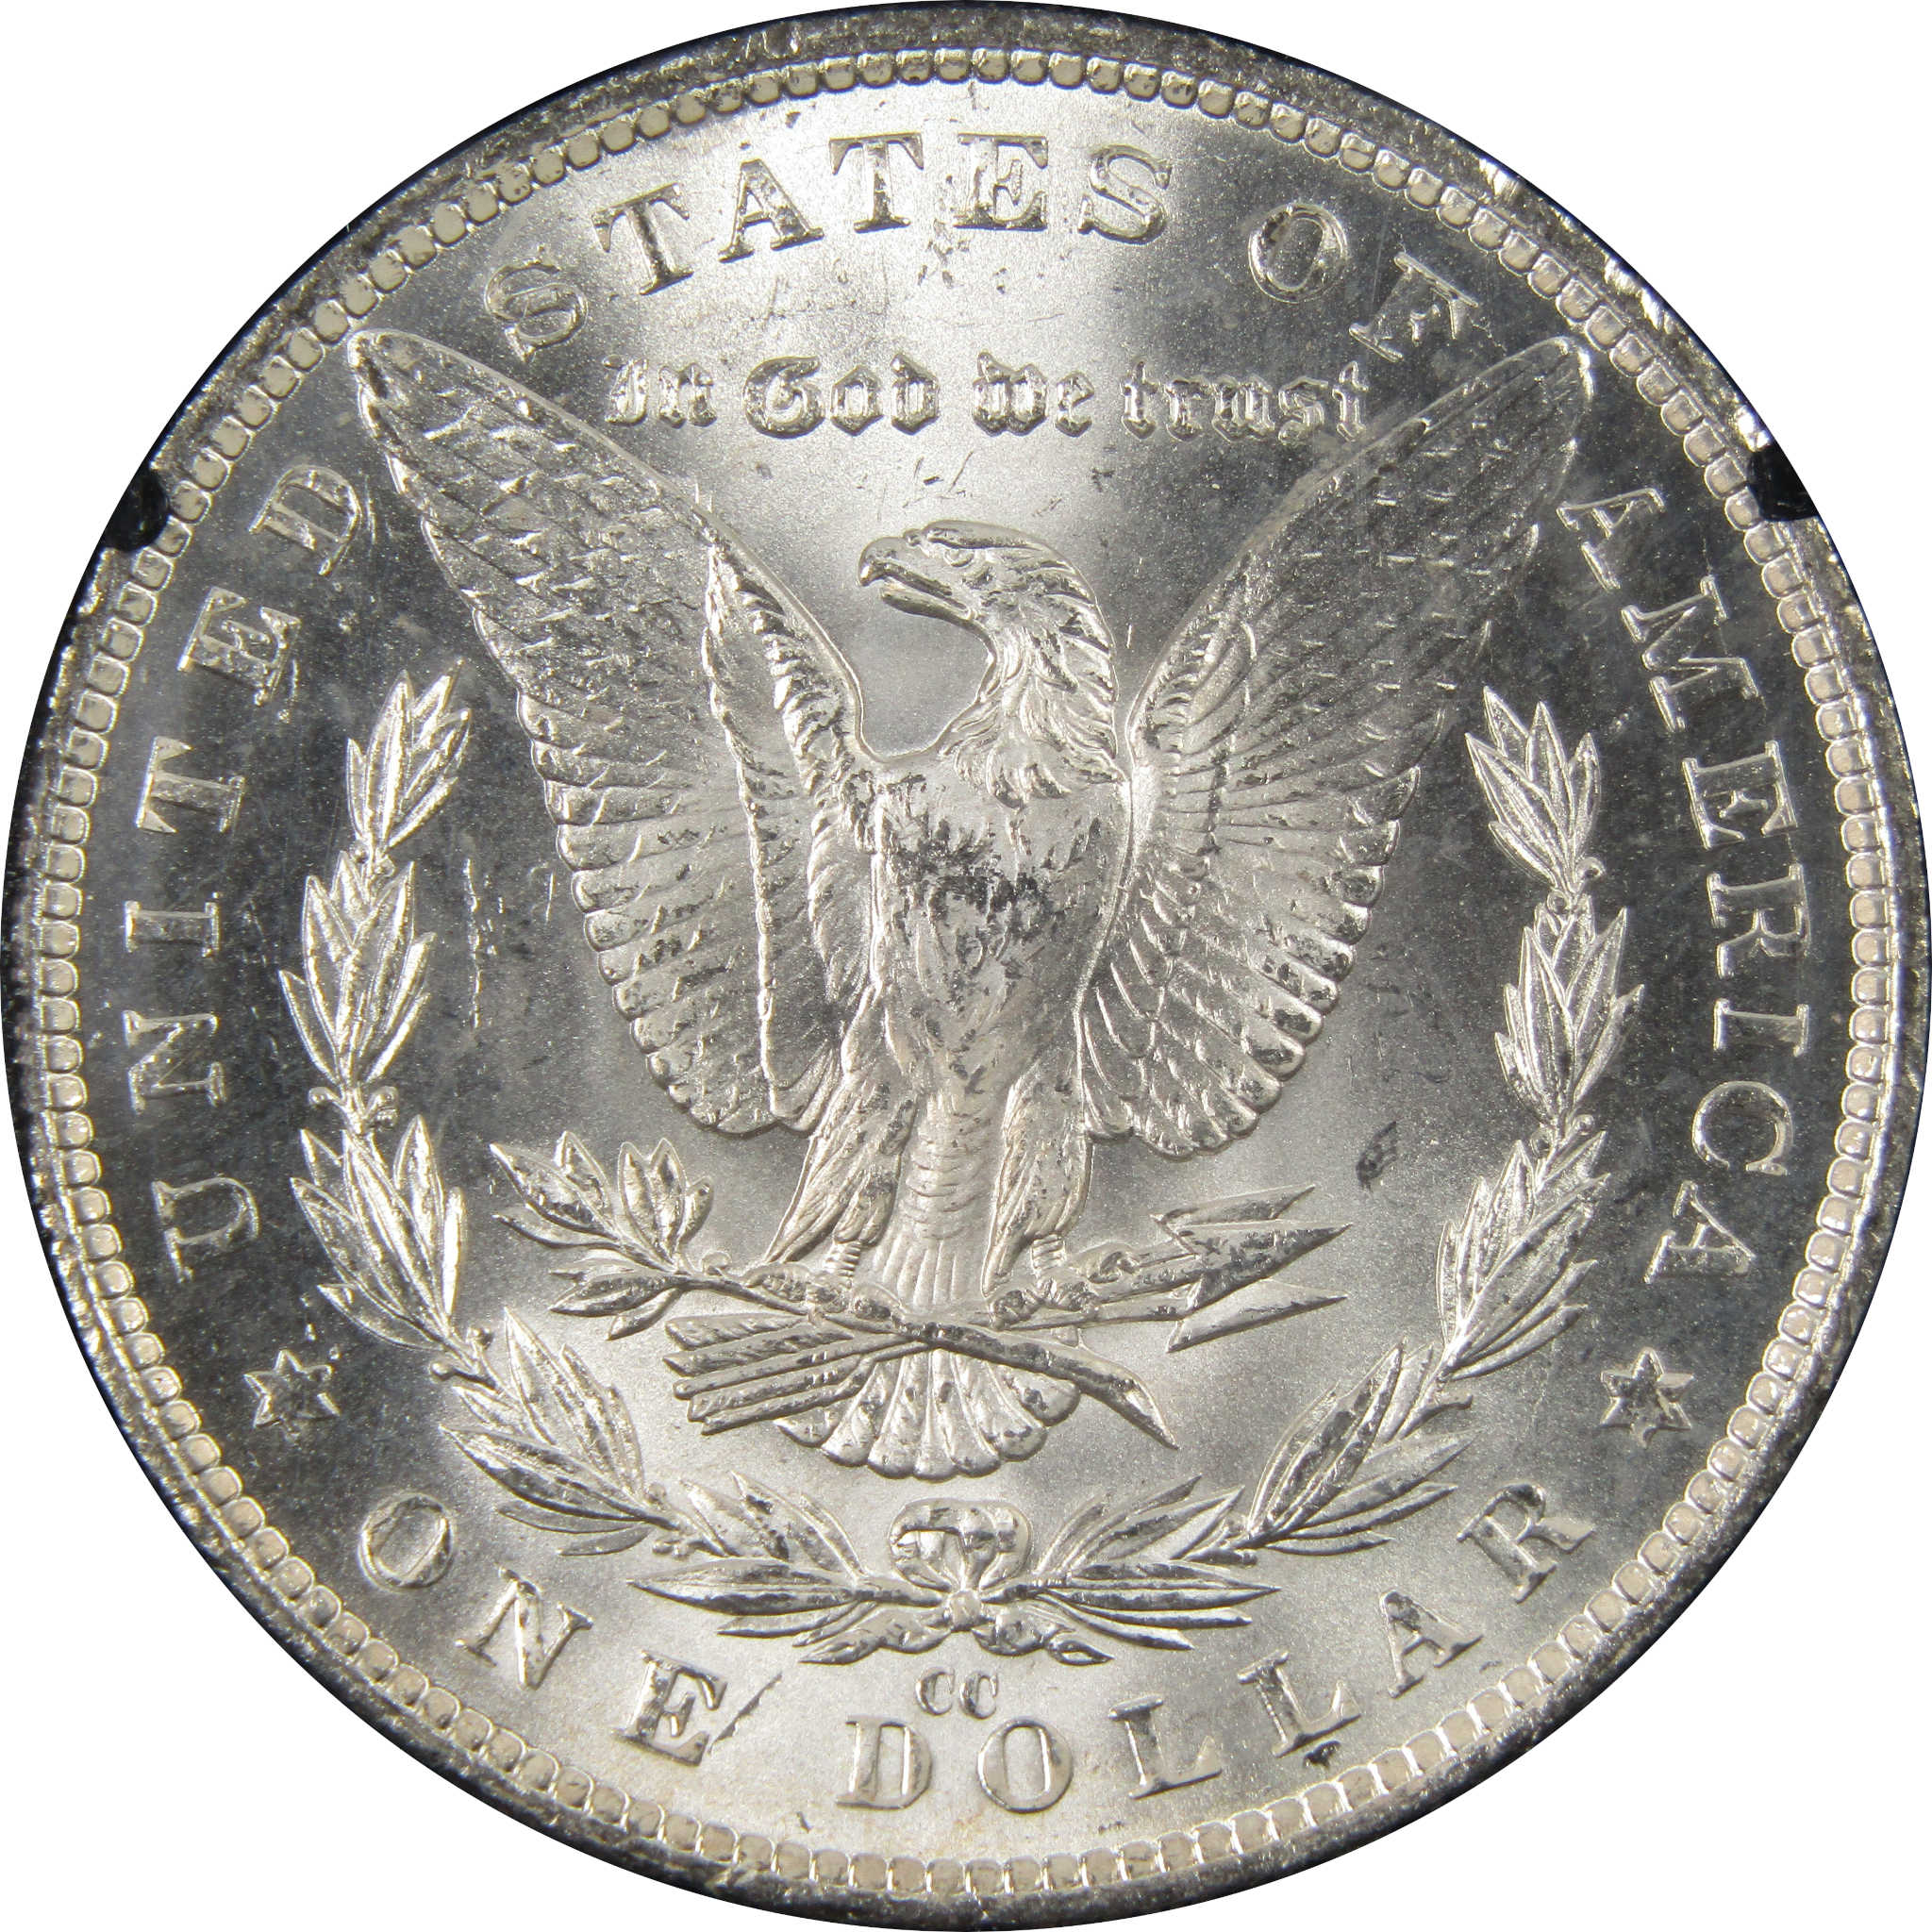 1882 CC GSA Morgan Dollar BU Uncirculated Silver $1 Coin SKU:I9862 - Morgan coin - Morgan silver dollar - Morgan silver dollar for sale - Profile Coins &amp; Collectibles